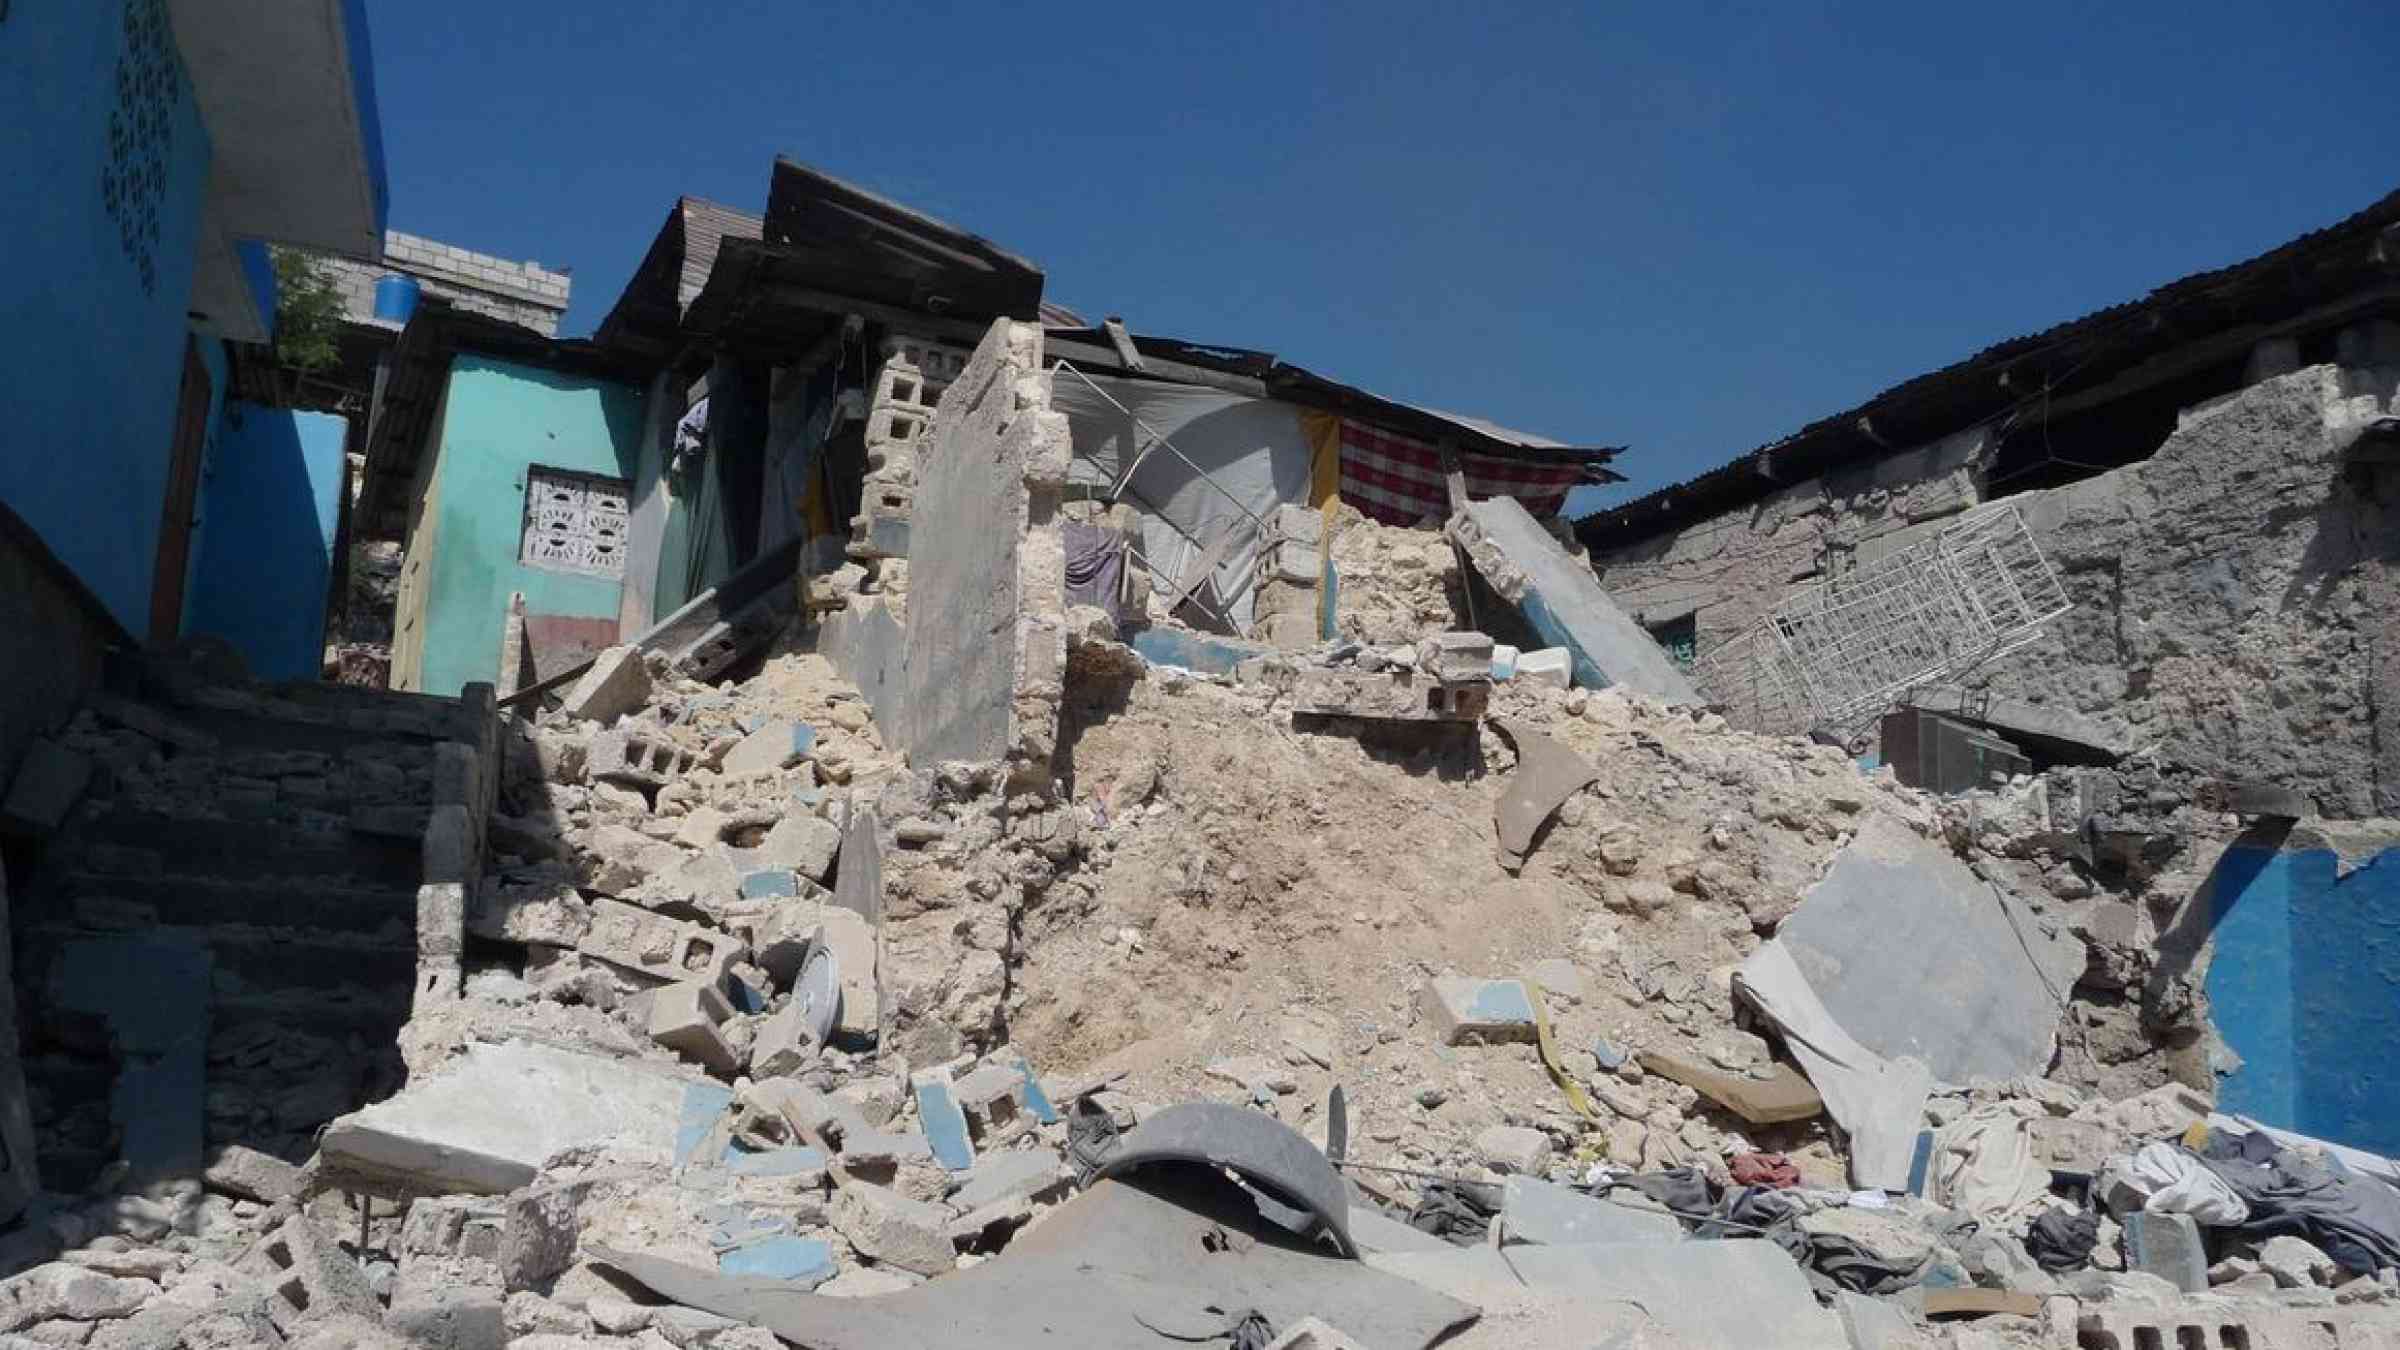 Earthquake damage, Haiti, 2010